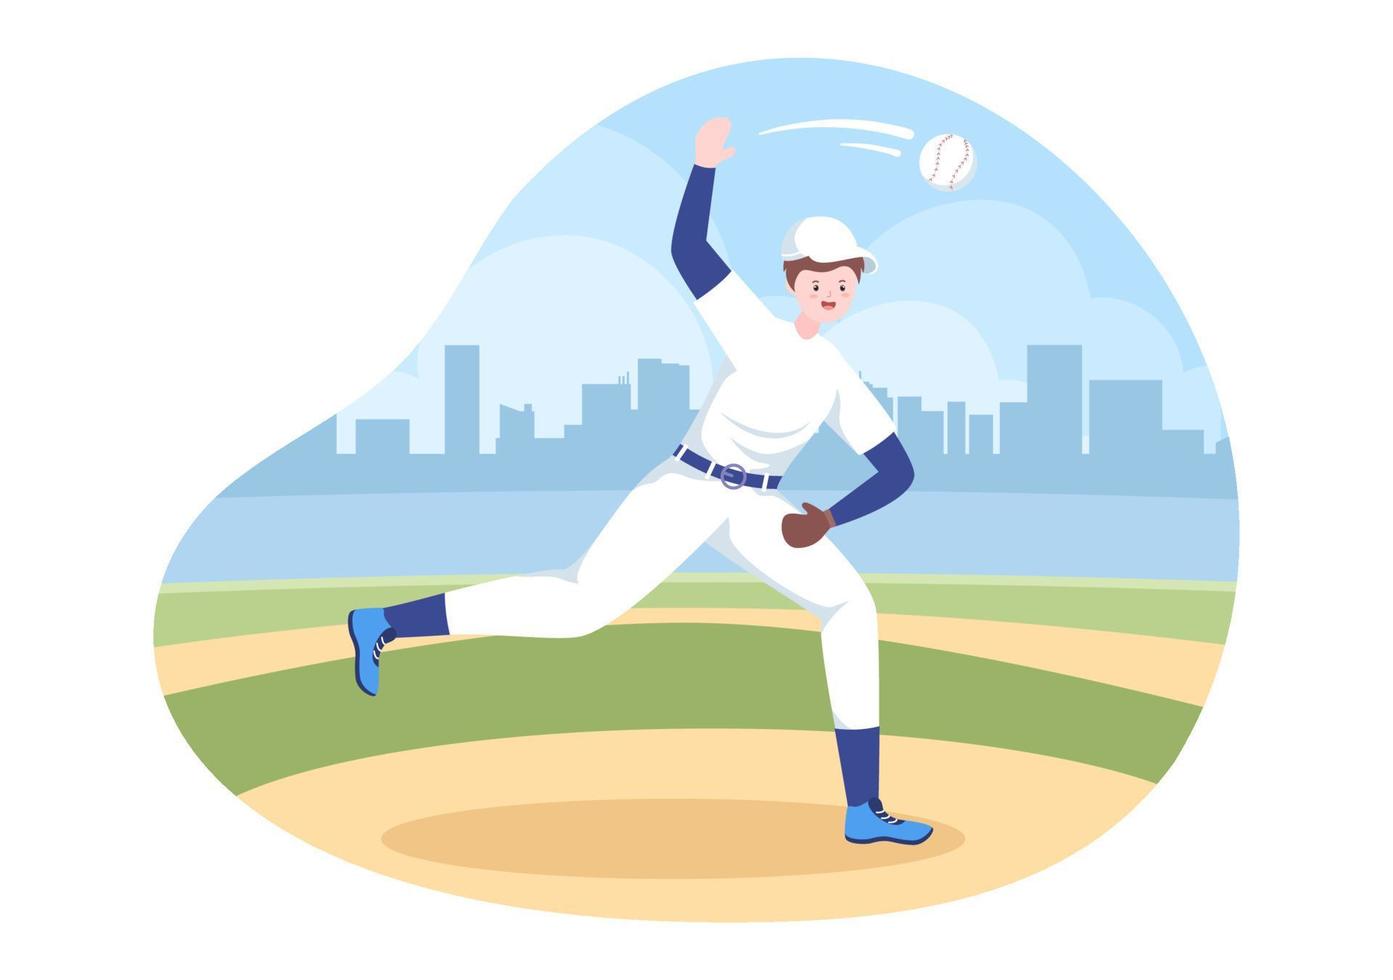 Baseballspieler werfen, fangen oder schlagen einen Ball mit Fledermäusen und Handschuhen, die Uniform auf dem Platz in flacher Cartoon-Illustration tragen vektor